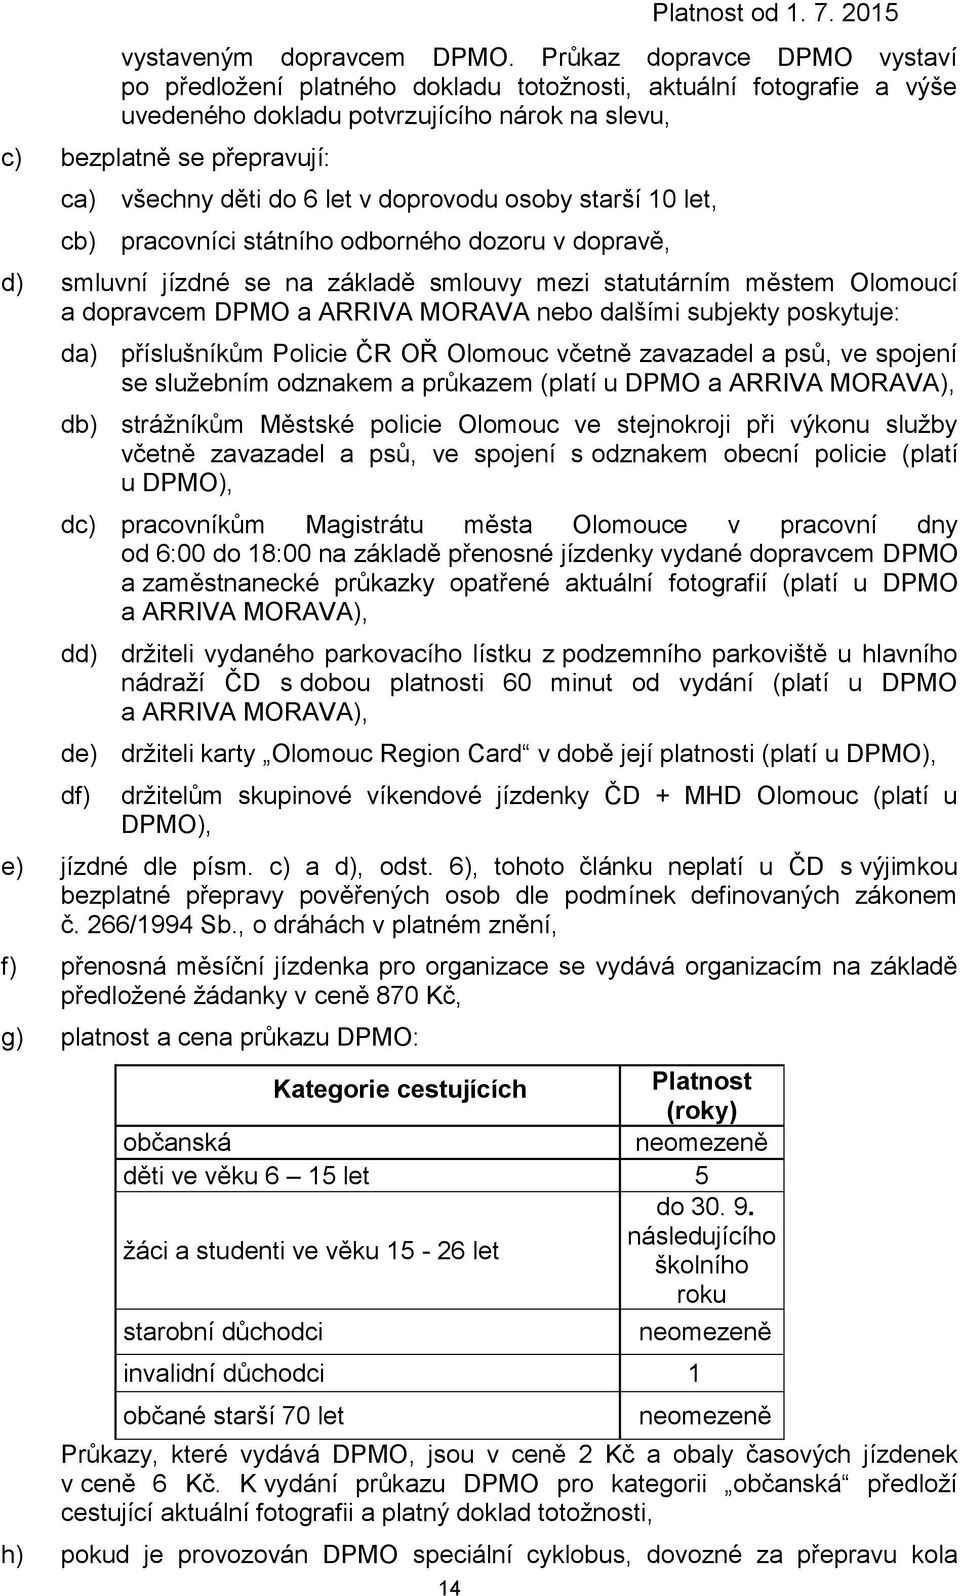 let v doprovodu osoby starší 10 let, cb) pracovníci státního odborného dozoru v dopravě, d) smluvní se na základě smlouvy mezi statutárním městem Olomoucí a dopravcem DPMO a ARRIVA MORAVA nebo